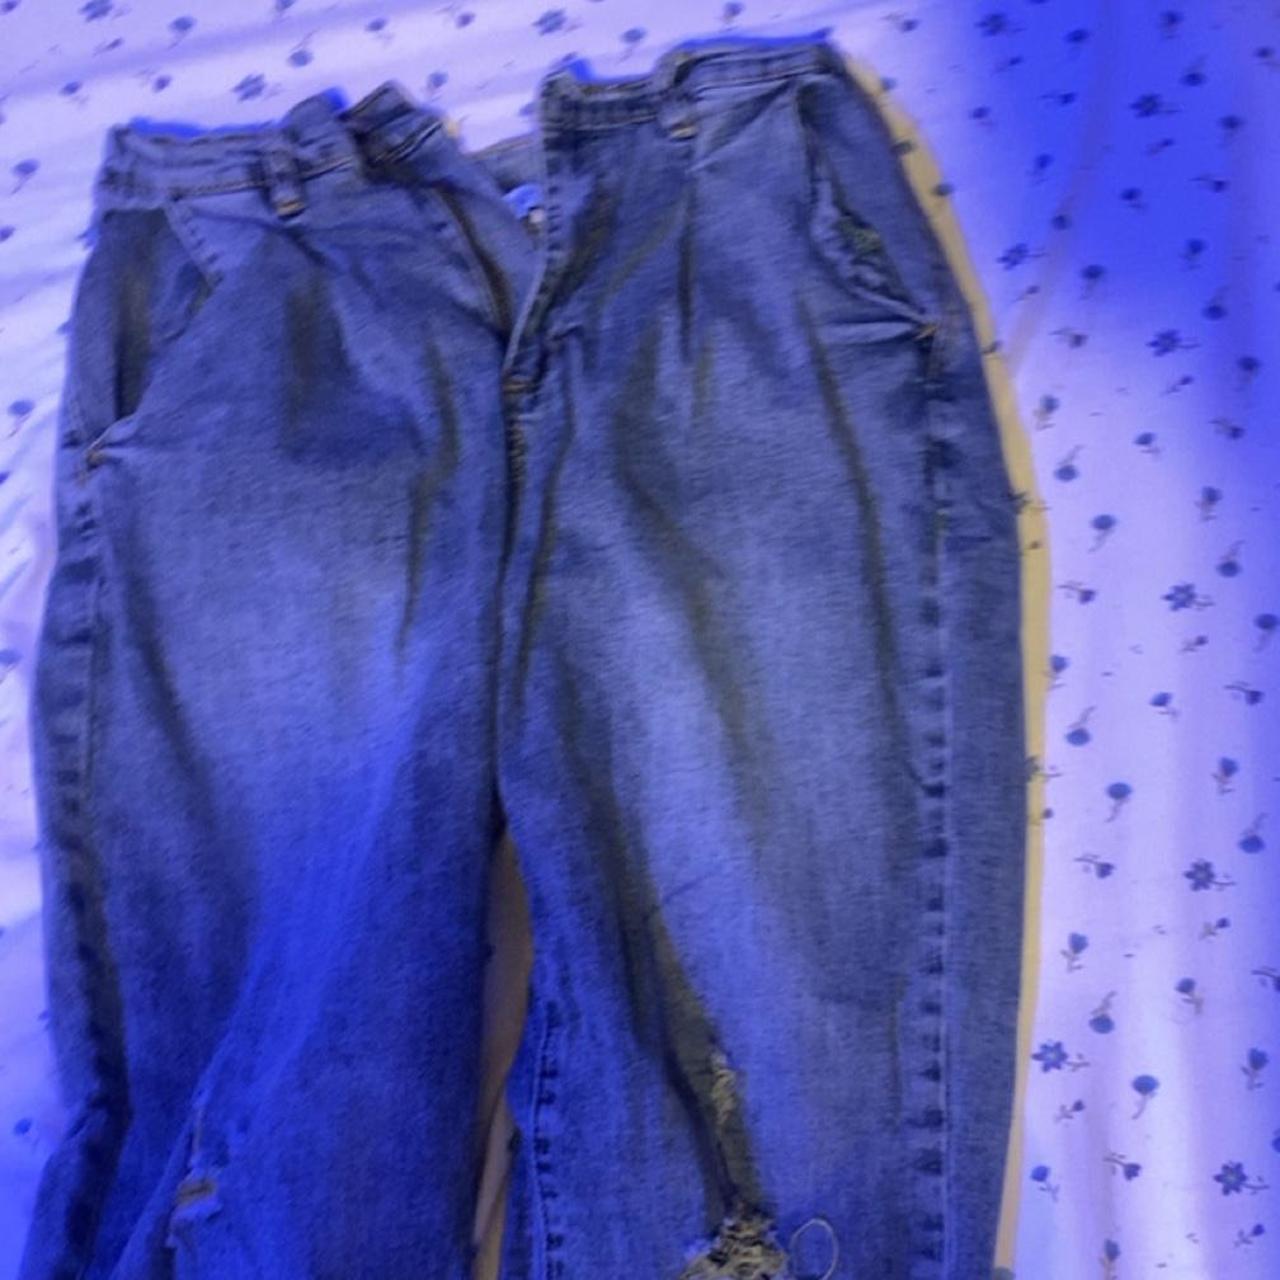 baggy blue jeans - Depop